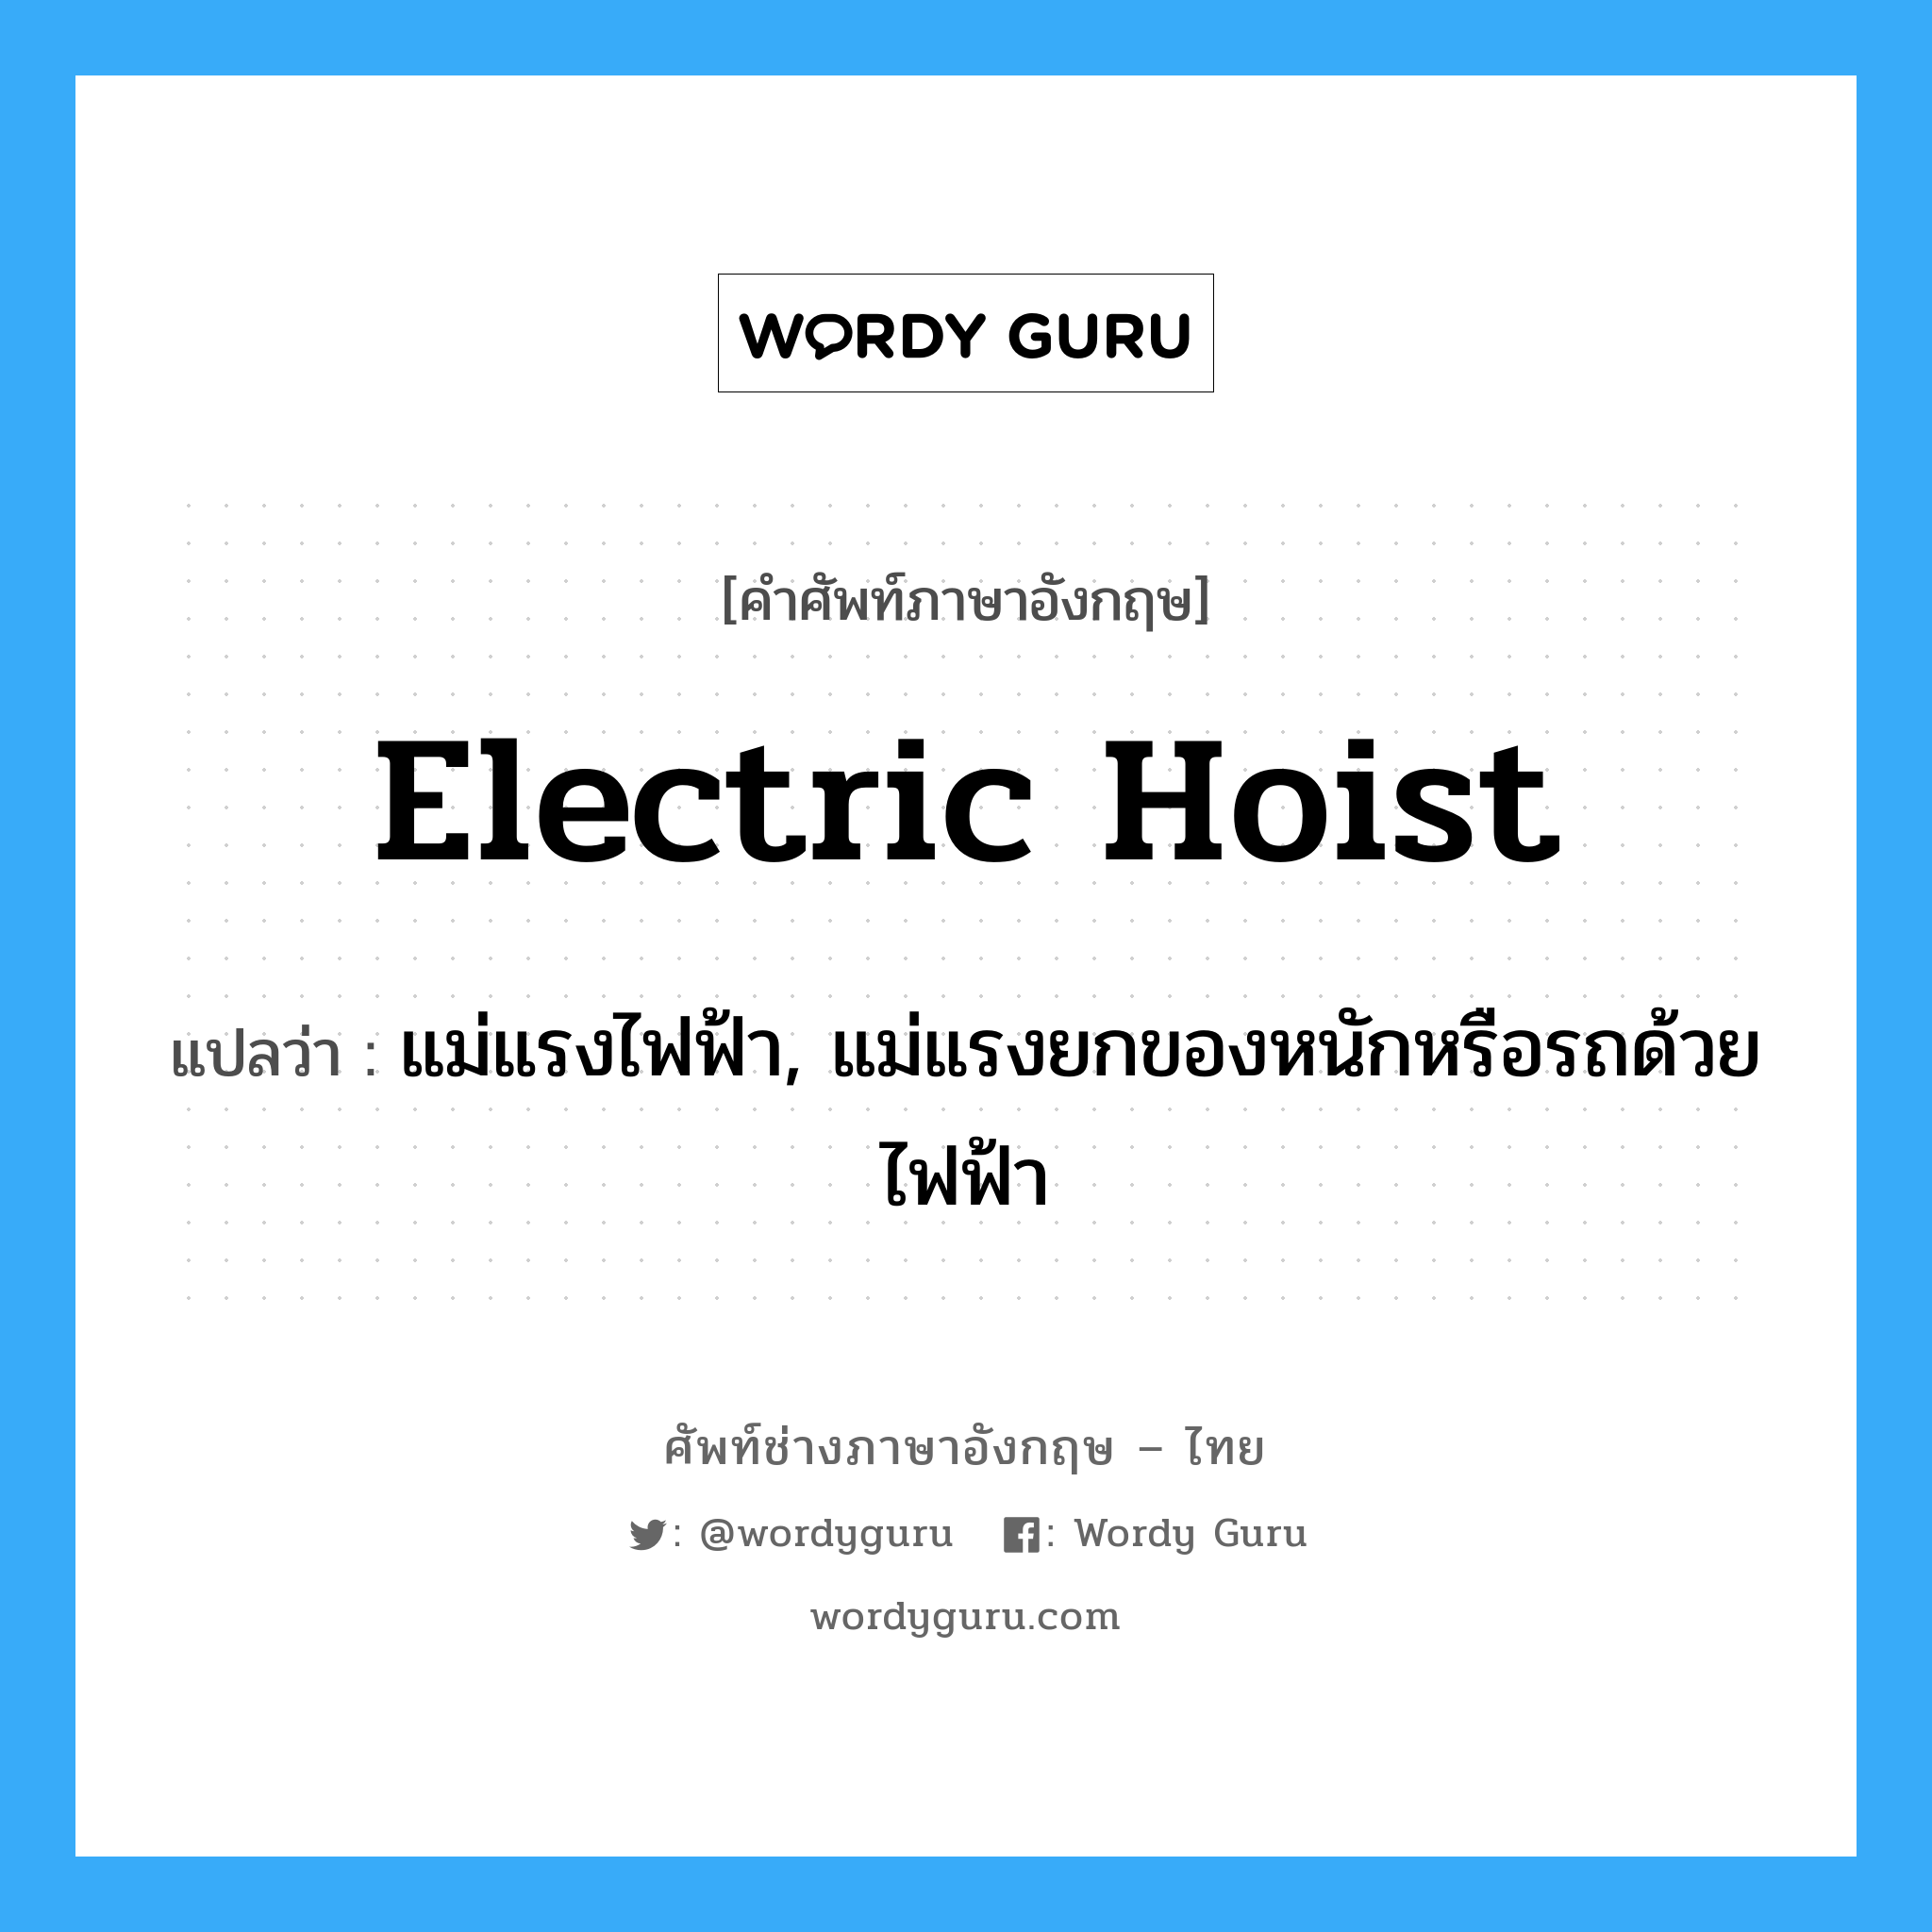 electric hoist แปลว่า?, คำศัพท์ช่างภาษาอังกฤษ - ไทย electric hoist คำศัพท์ภาษาอังกฤษ electric hoist แปลว่า แม่แรงไฟฟ้า, แม่แรงยกของหนักหรือรถด้วยไฟฟ้า